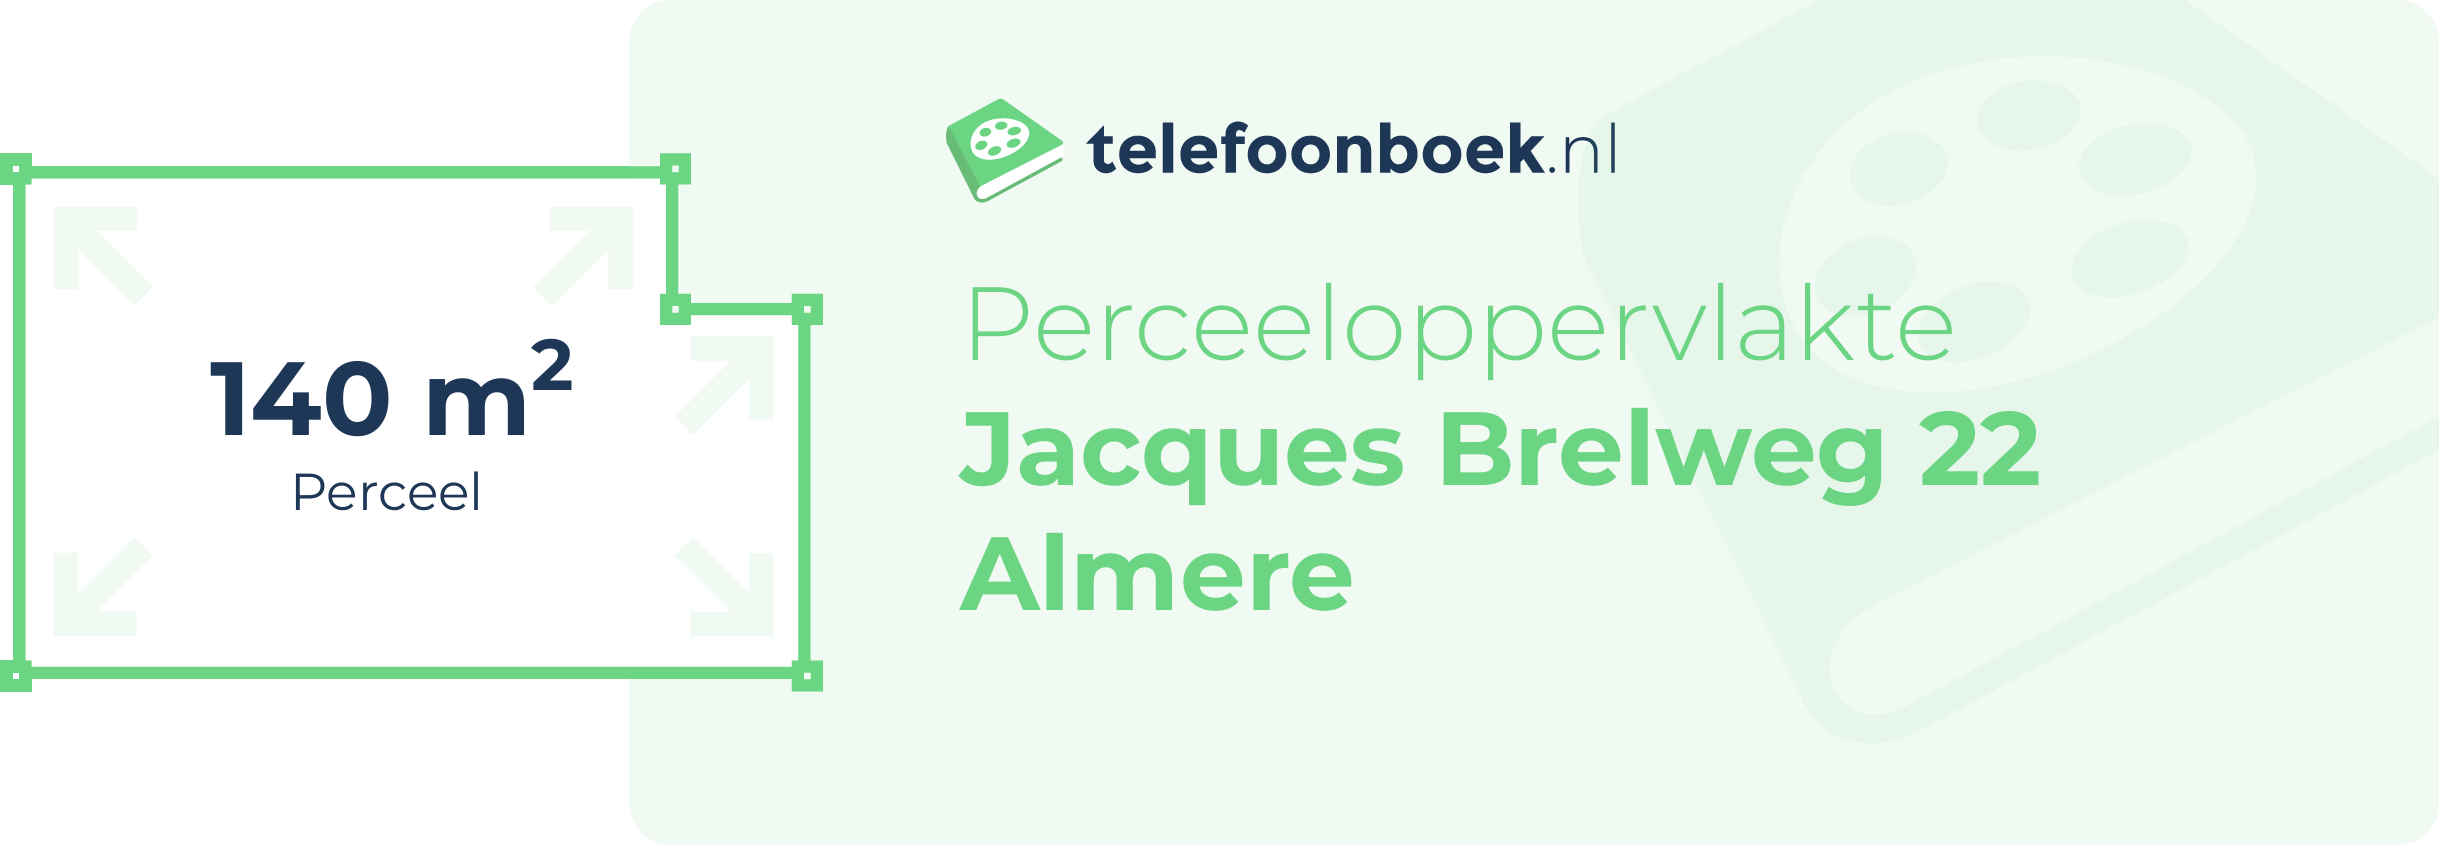 Perceeloppervlakte Jacques Brelweg 22 Almere